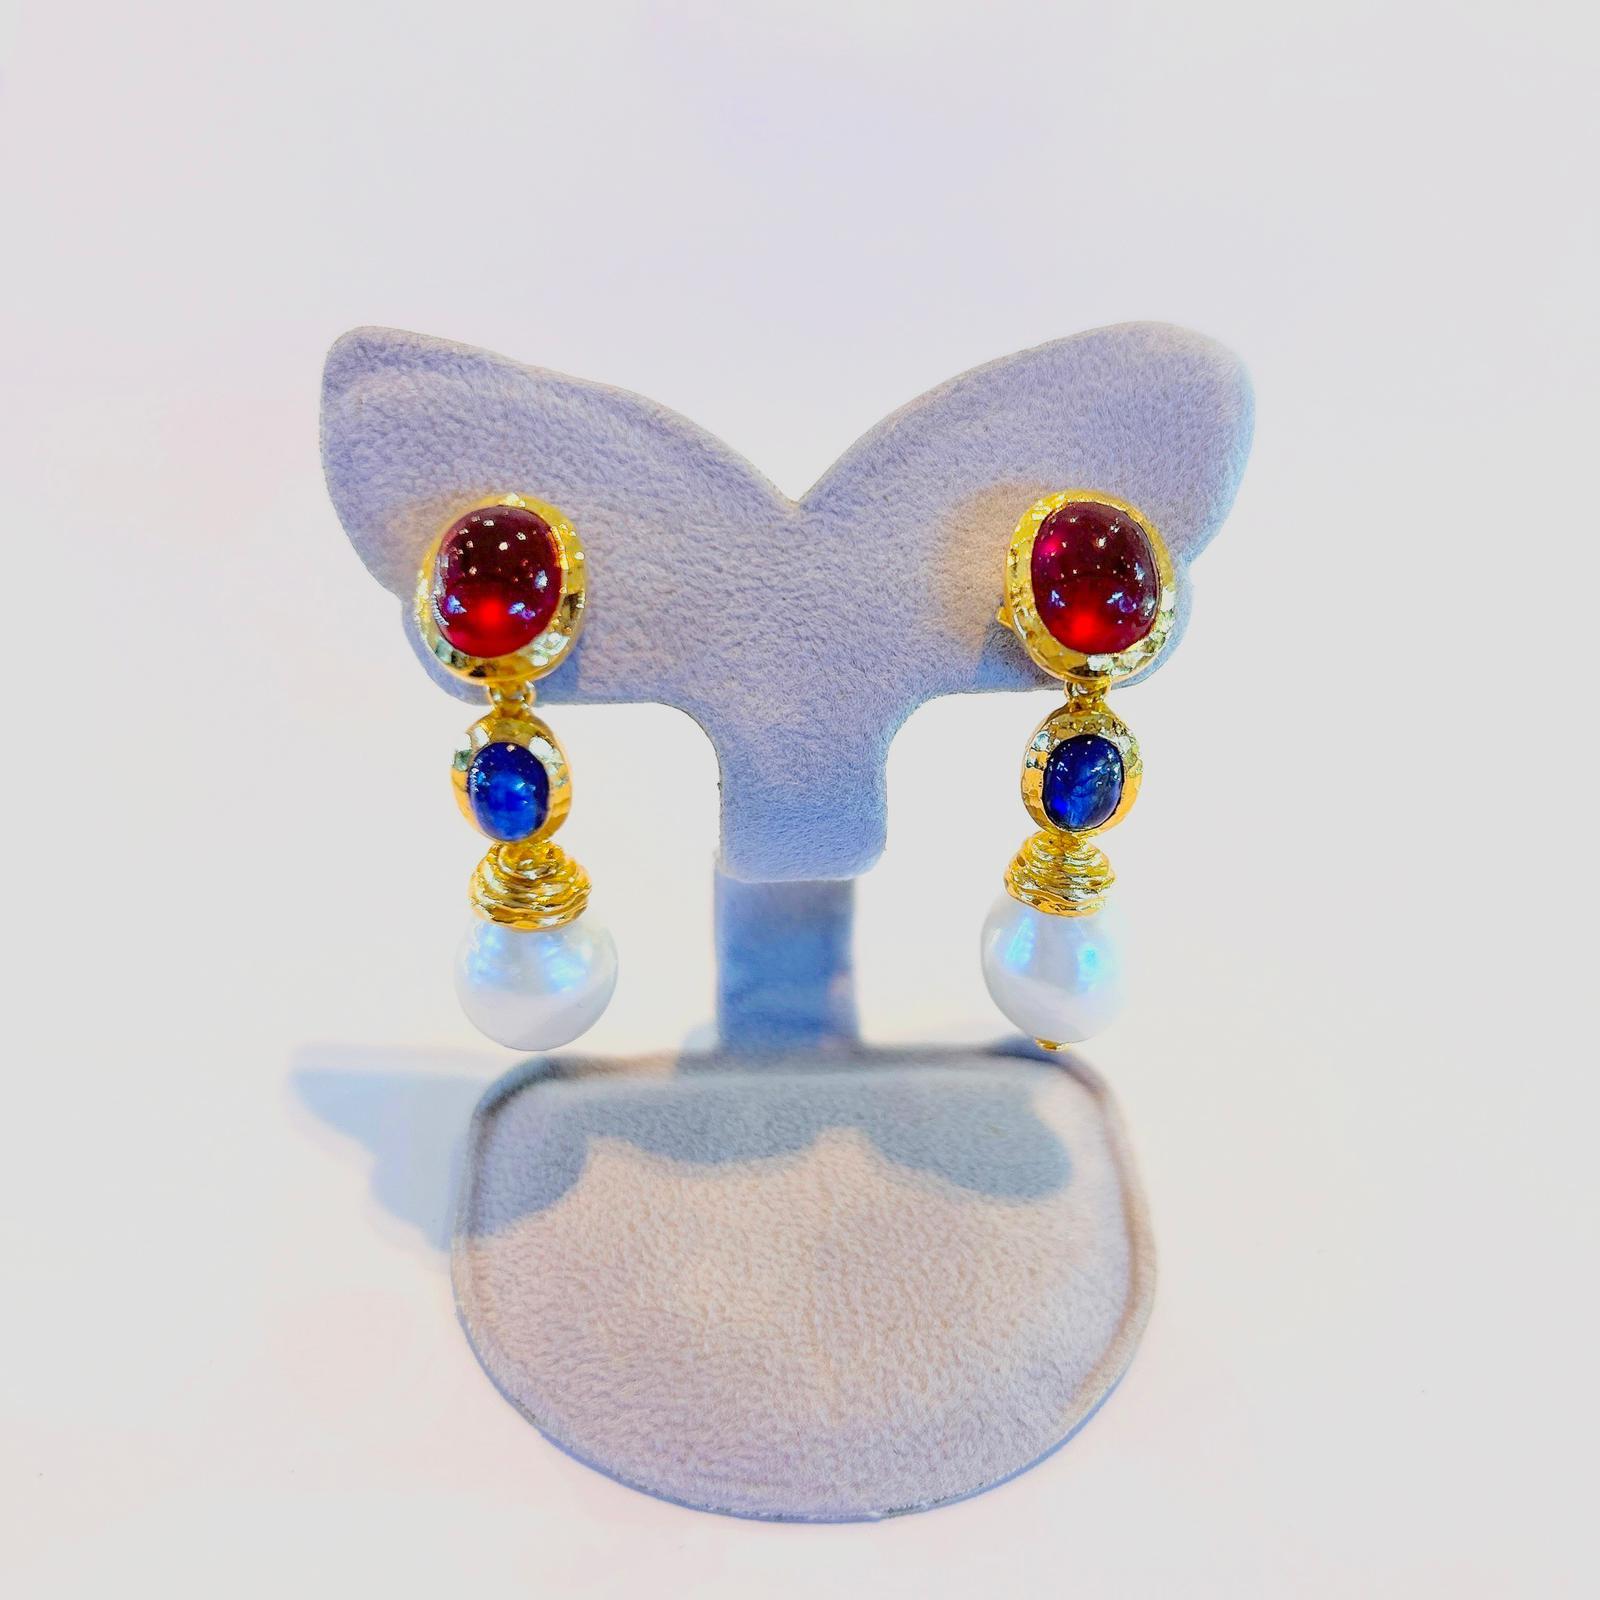 Bochic “Capri” Red Ruby & Blue Sapphire Earrings Set in 22k Gold & Silver For Sale 2